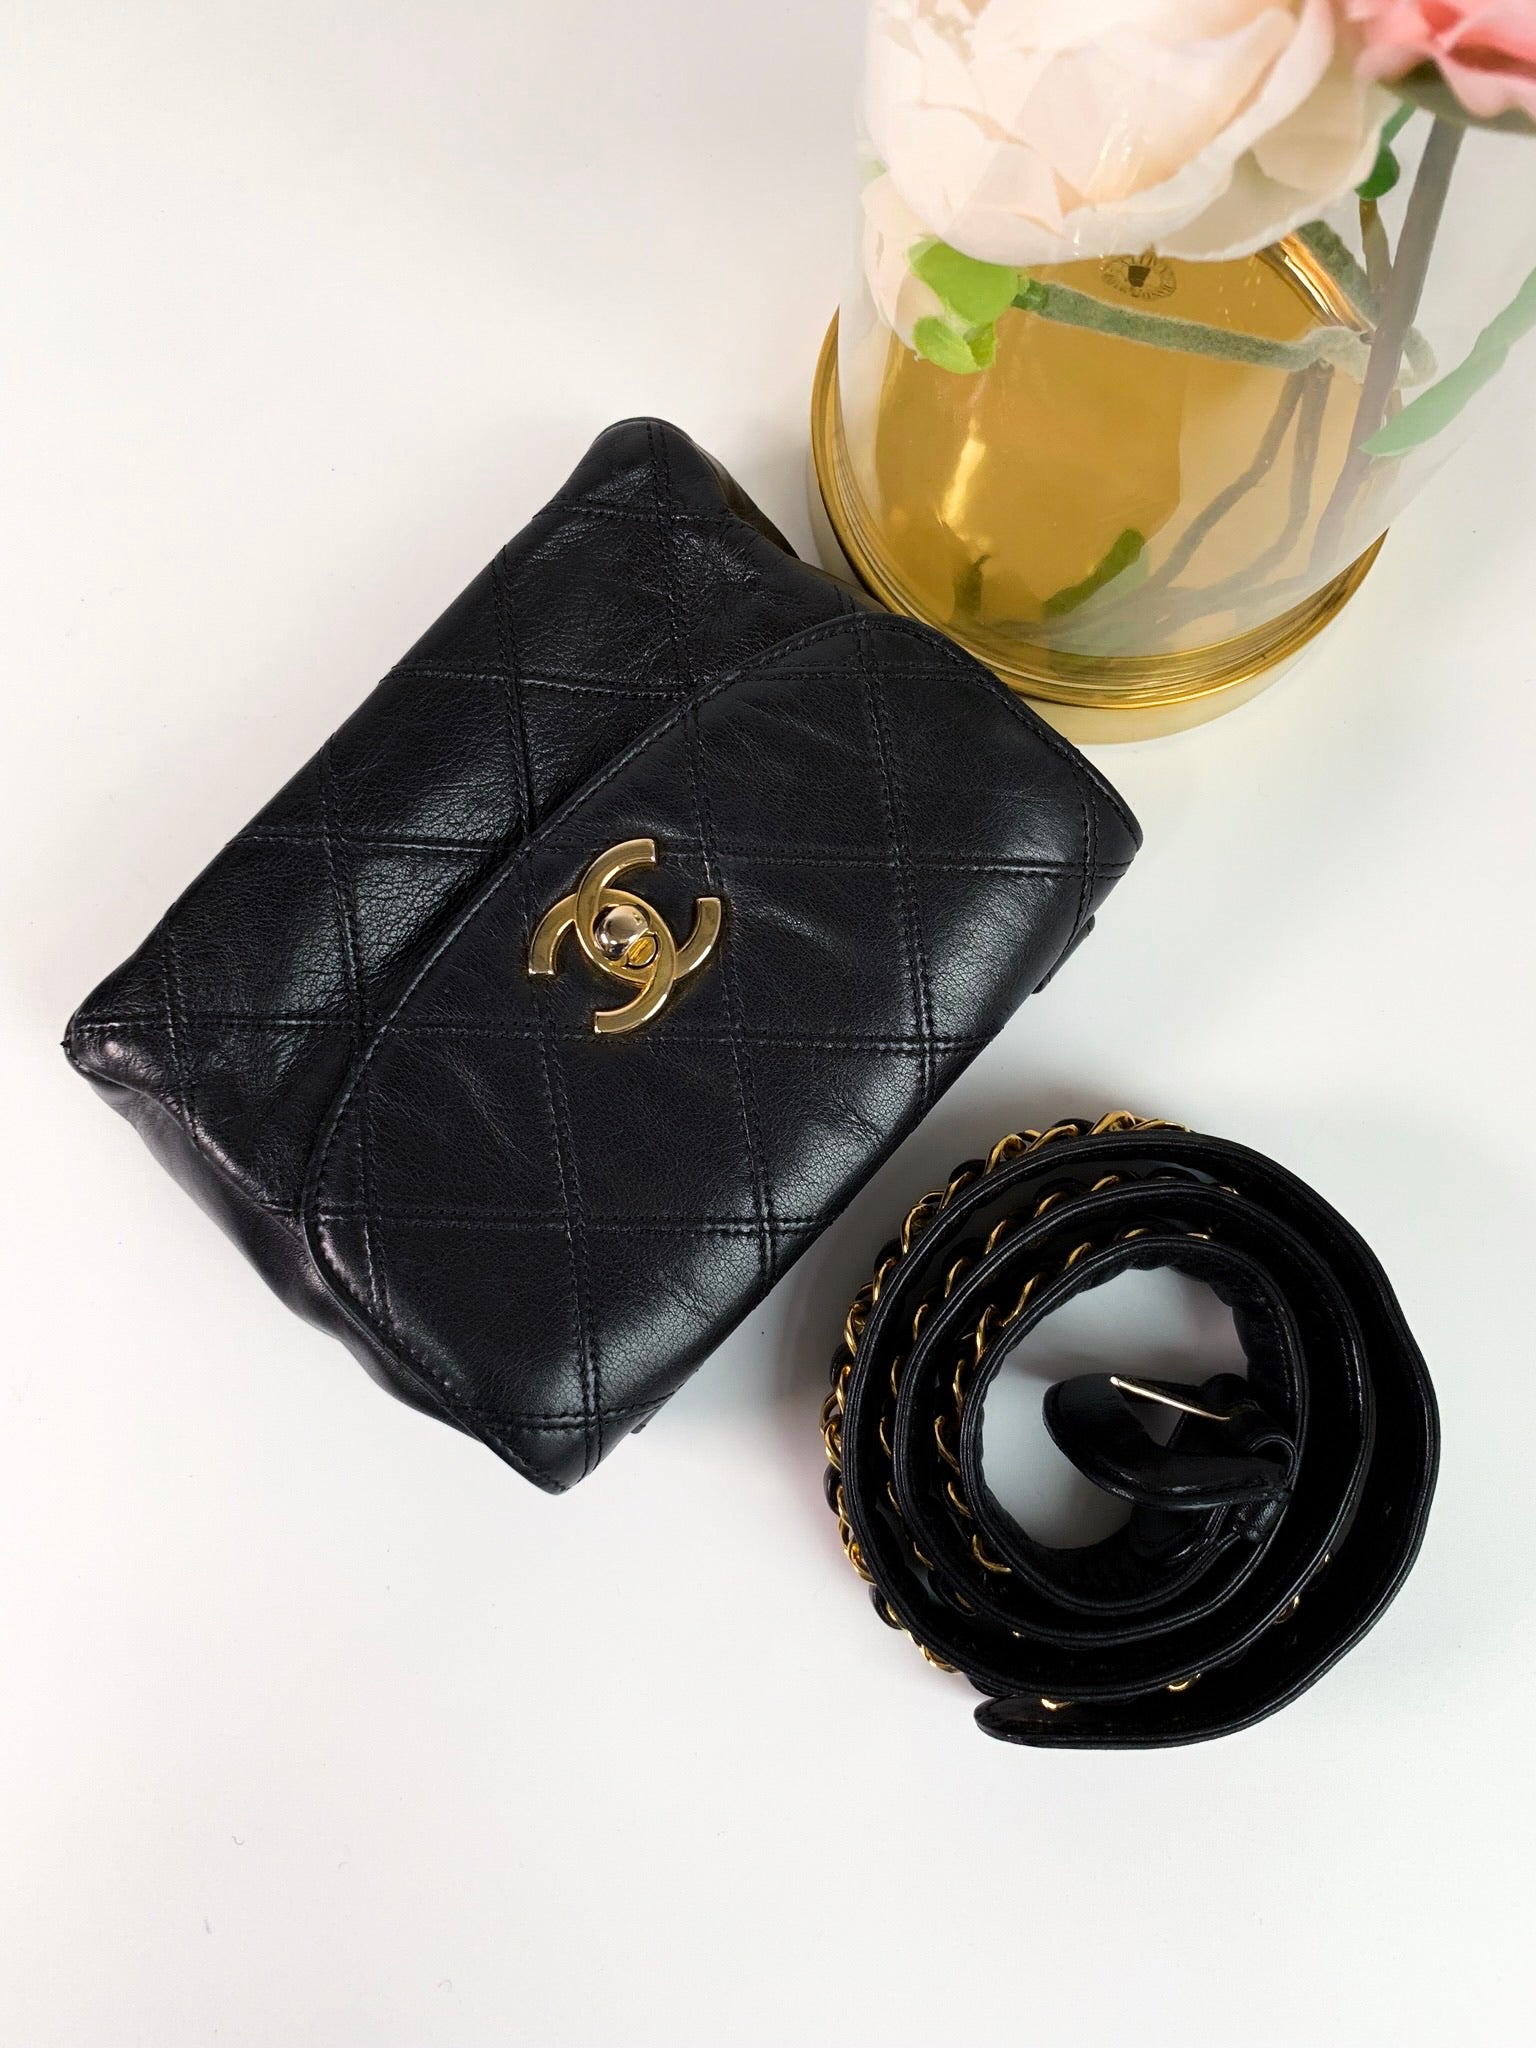 Chanel Belt Bag Lambskin Black